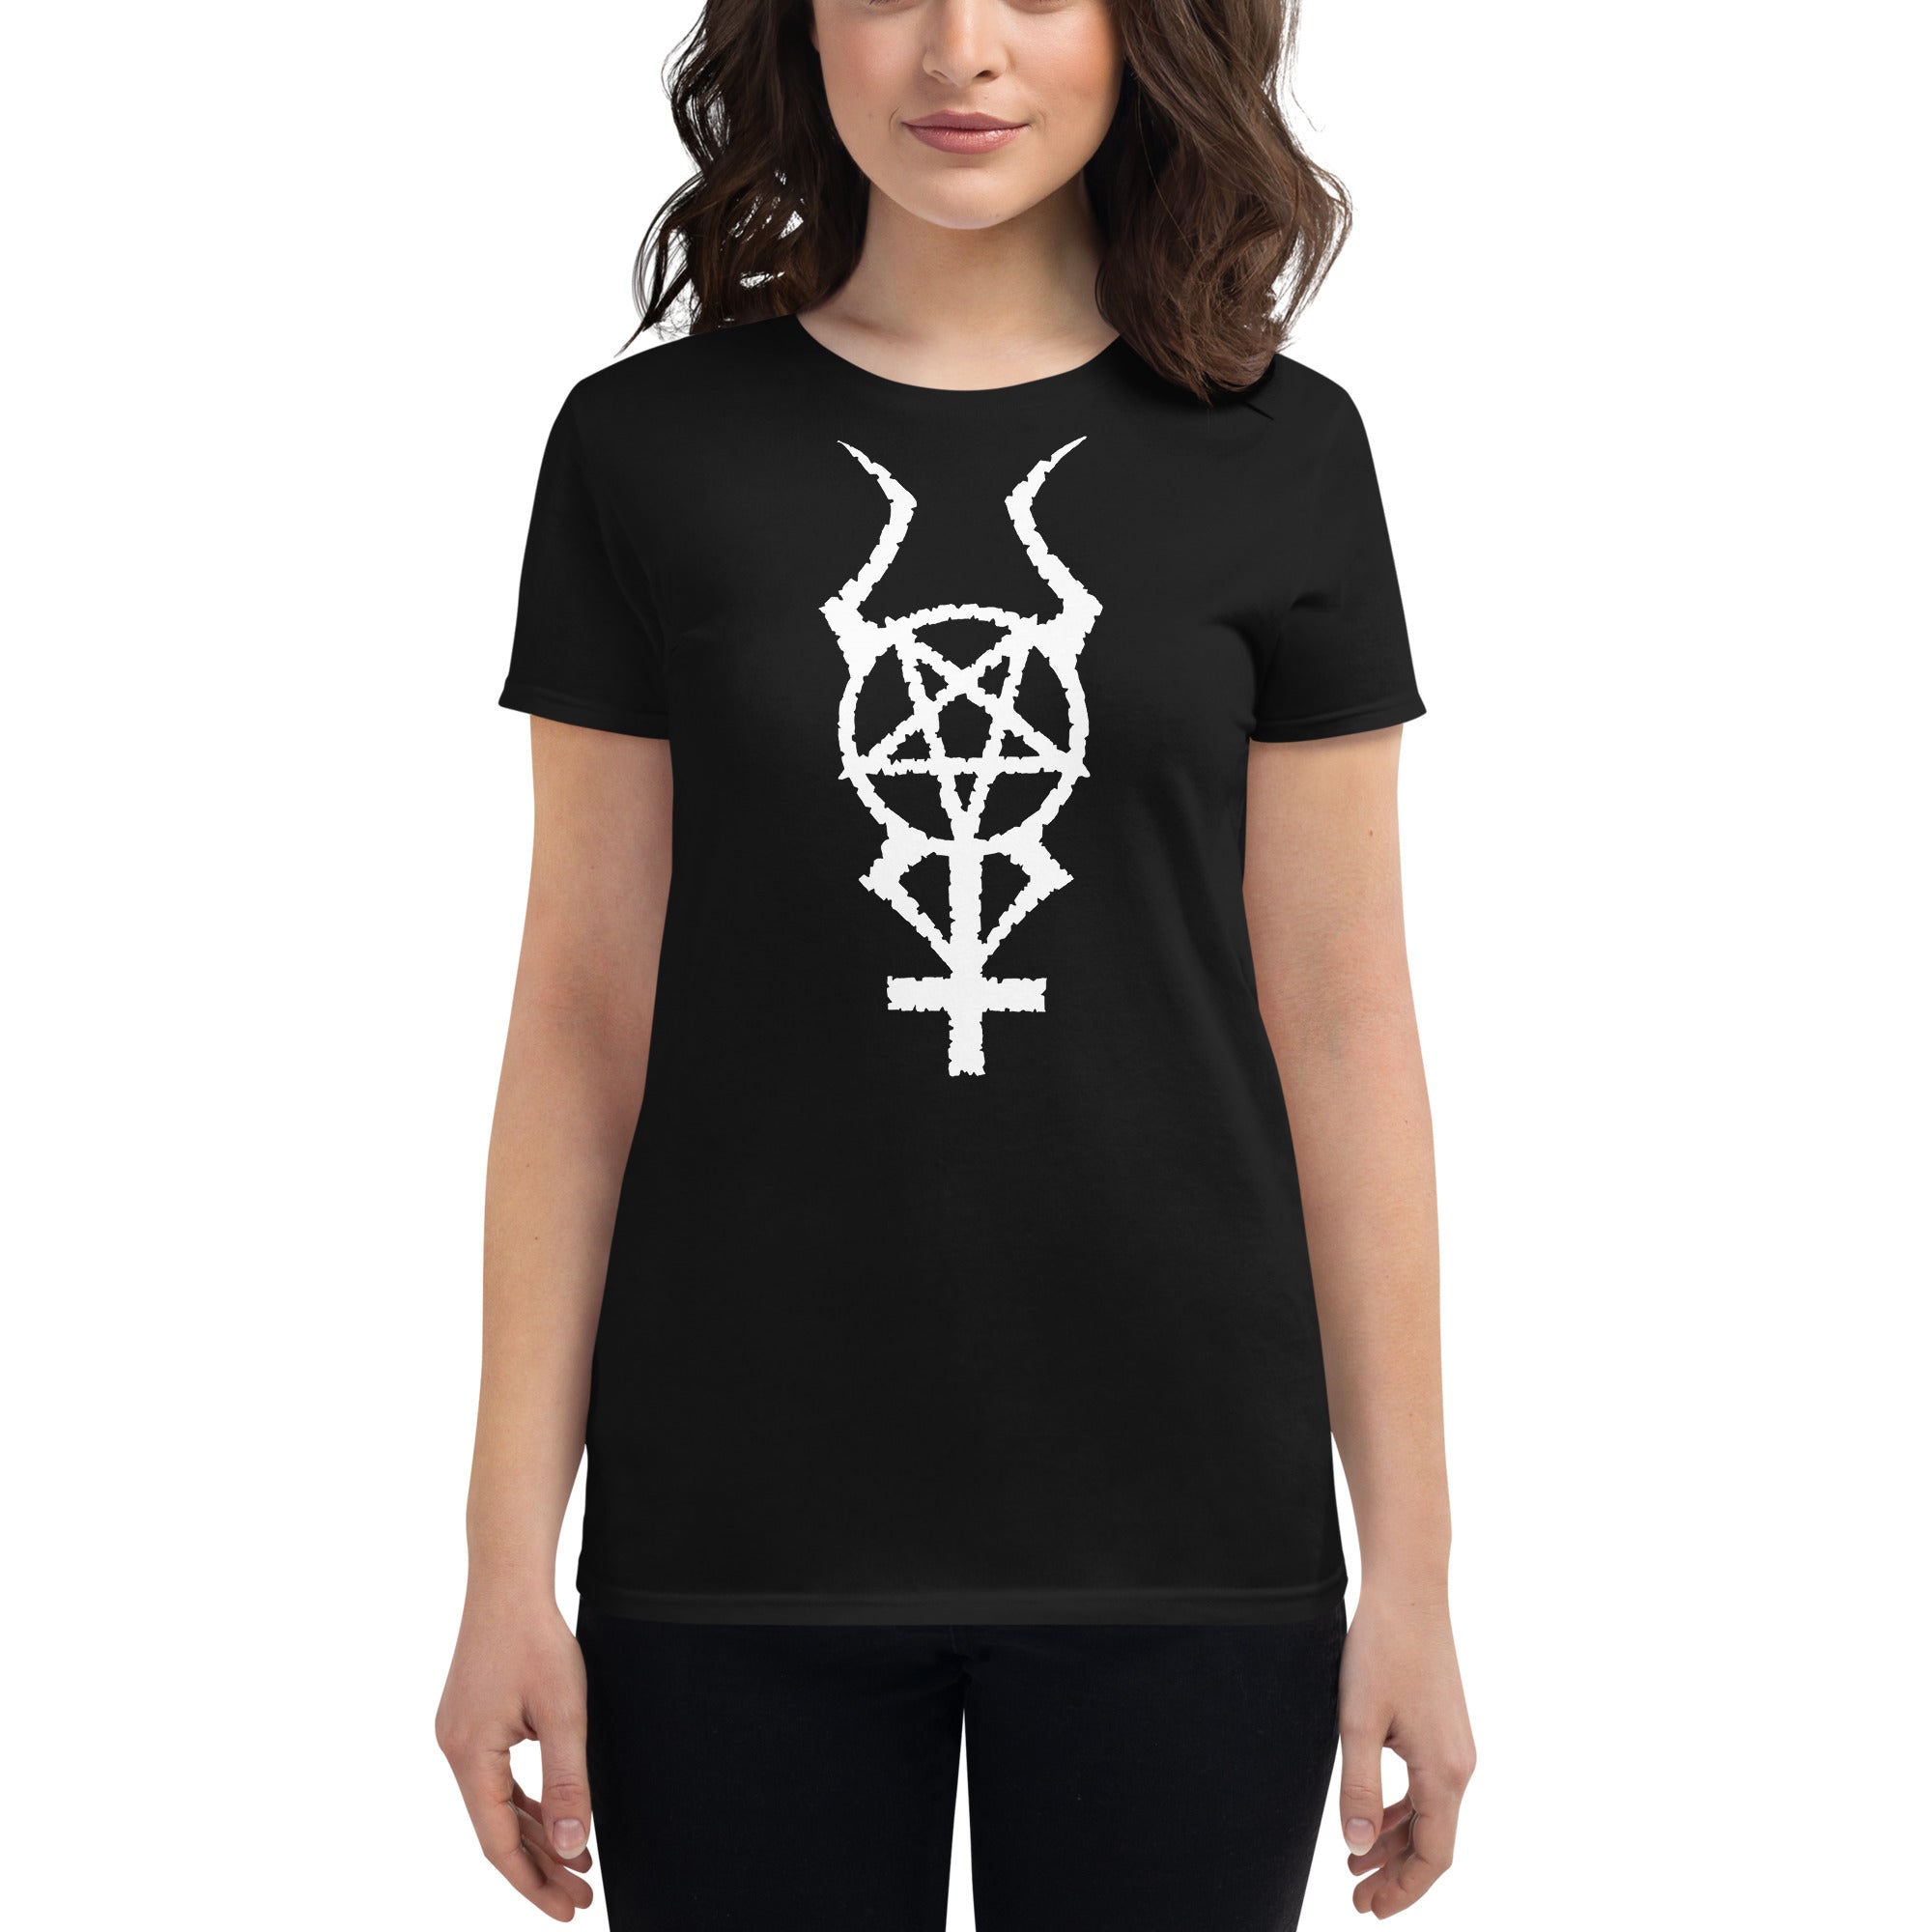 White Horned Pentacross Ritual Pentagram Cross Women's Short Sleeve Babydoll T-shirt